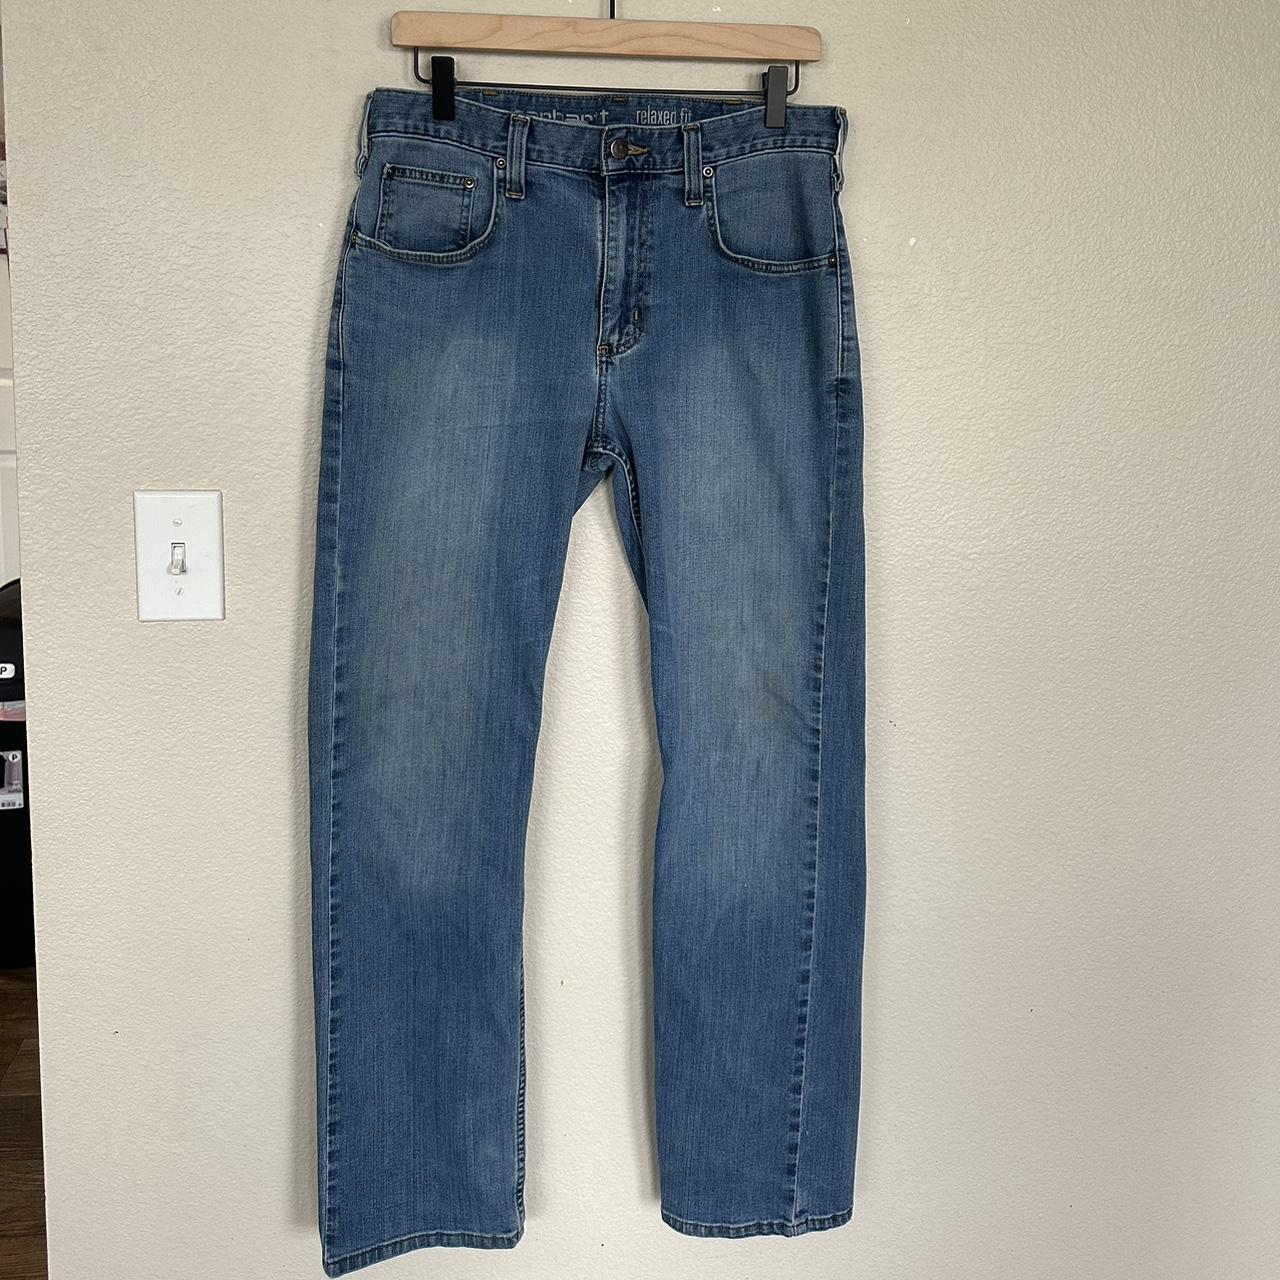 Men’s straight legged Carhartt jeans 👖👖👖 Light blue... - Depop